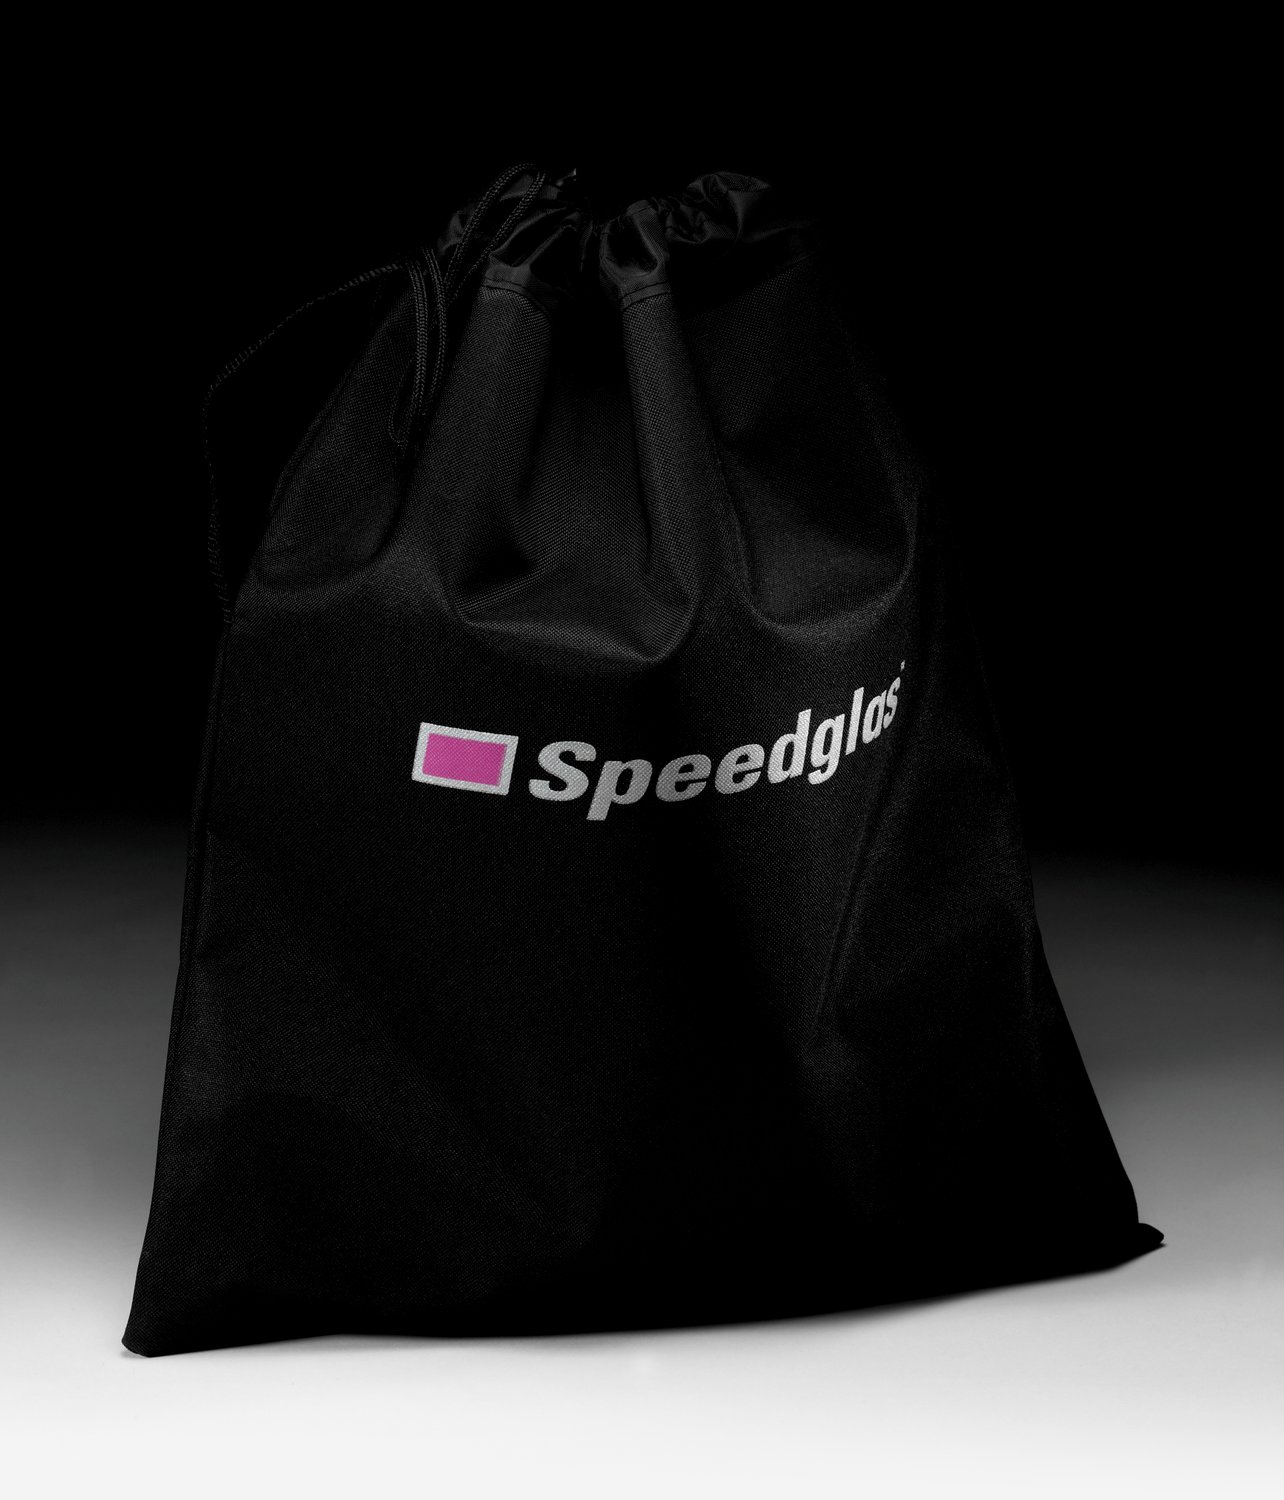 7000128219 - 3M Speedglas Protective Bag 06-0500-65, 1 EA/Case